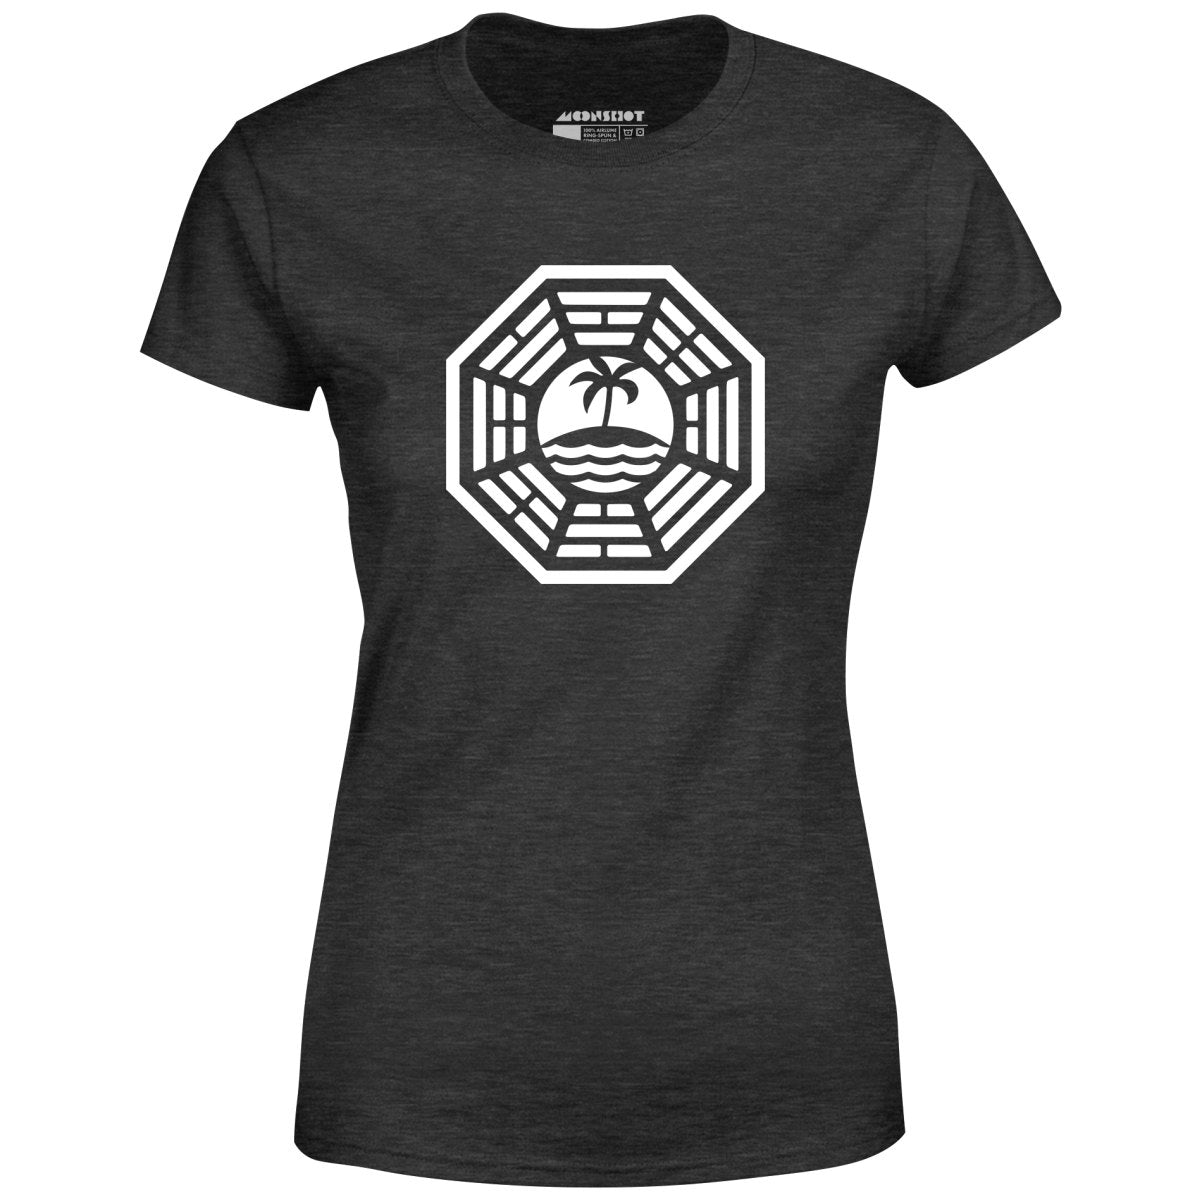 The Dharma Initiative - Women's T-Shirt